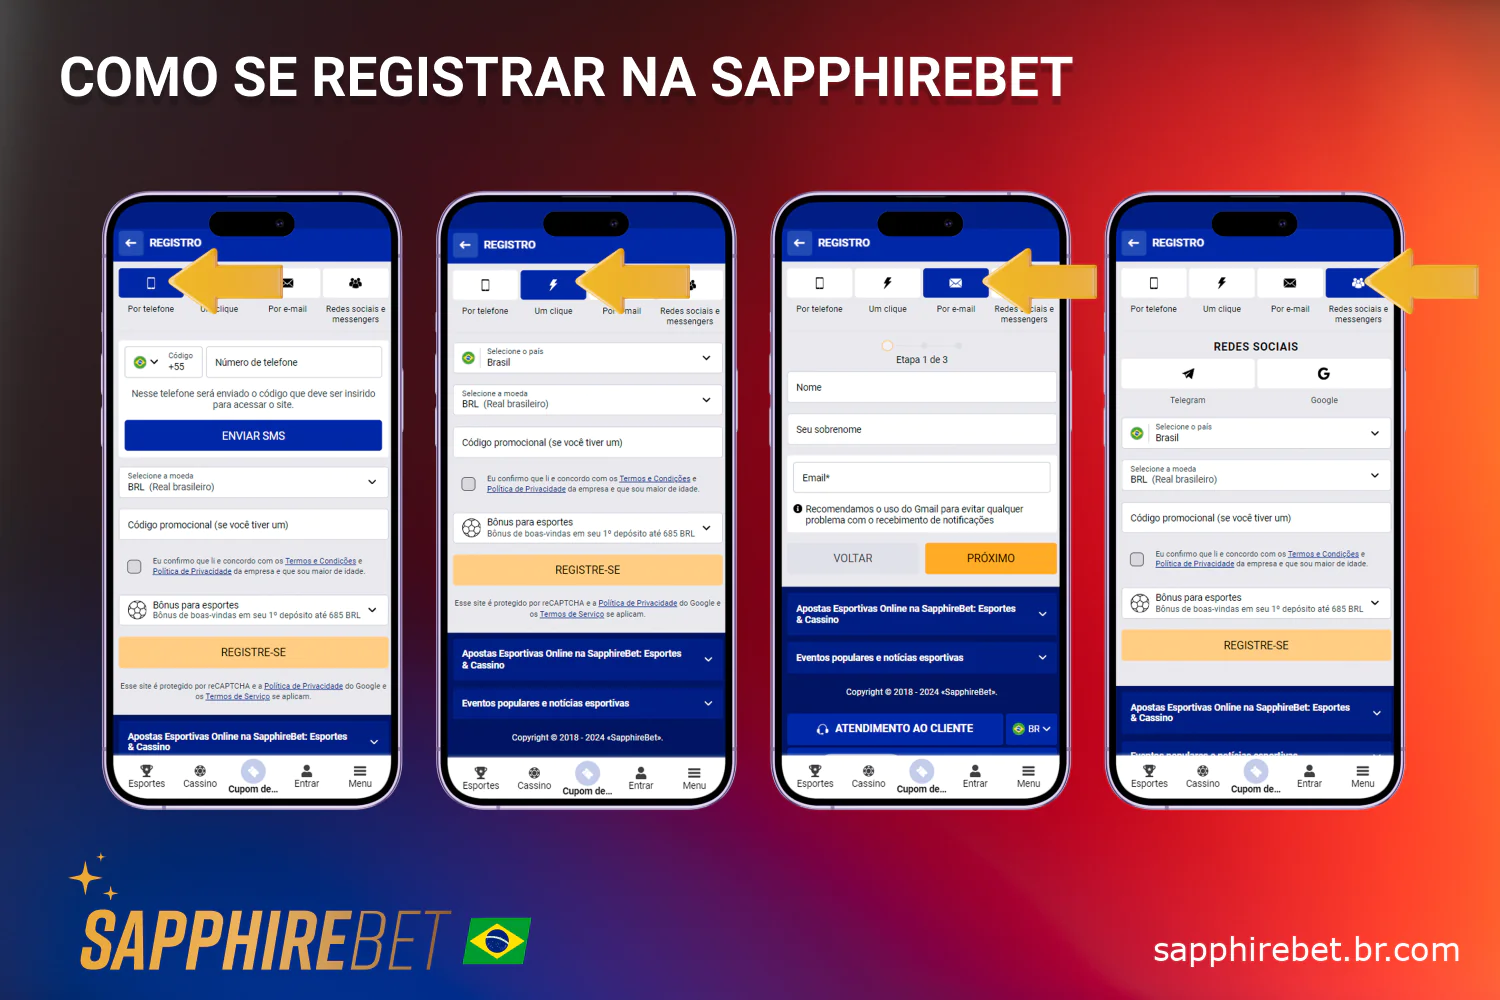 Os usuários do Brasil podem criar uma conta na Sapphirebet usando um dos métodos de registro disponíveis